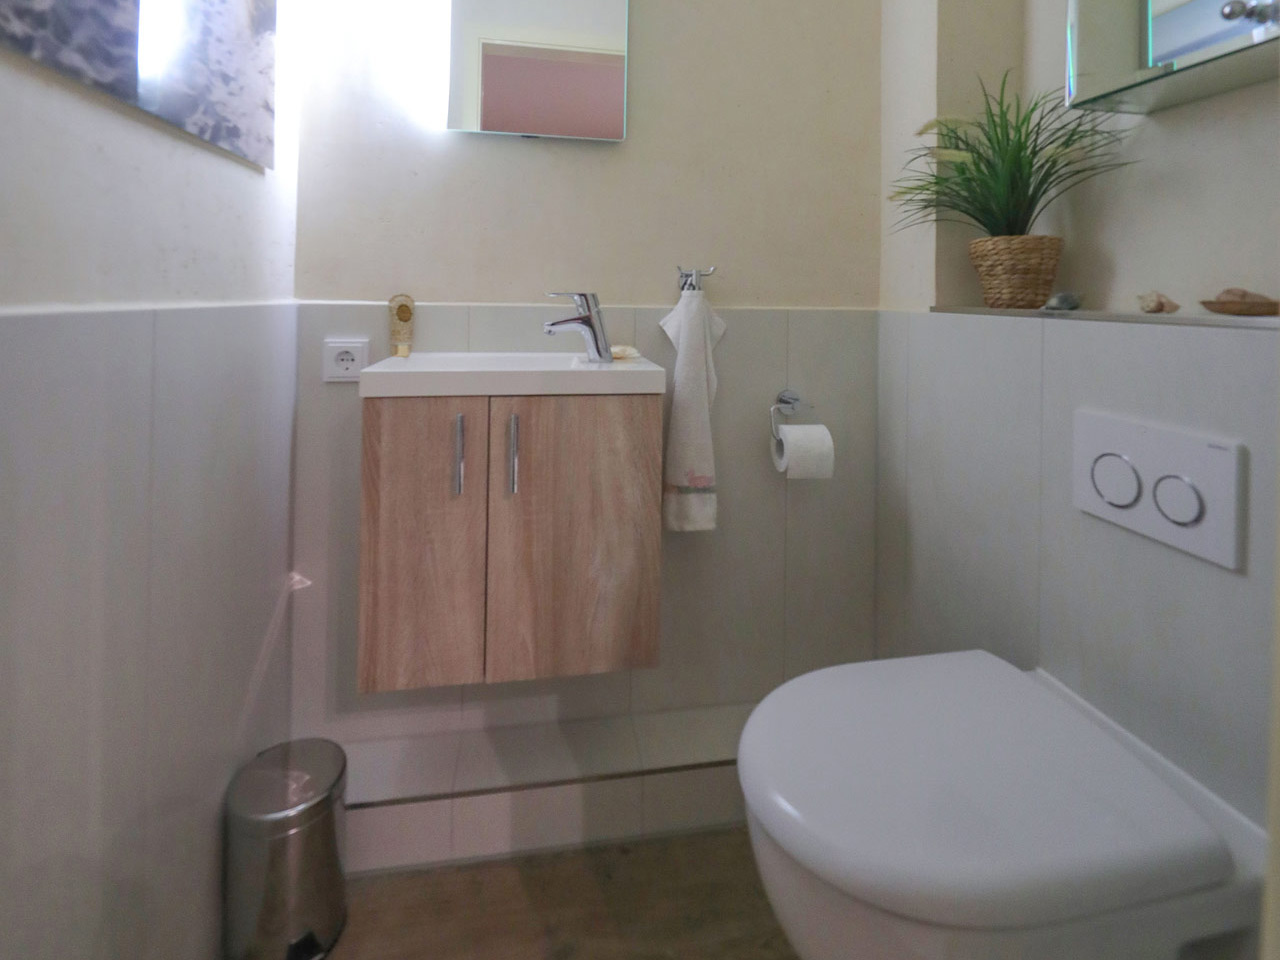 Foto eines Gäste-WCs als Beispiel für eine Badrenovierung in Hamburg.